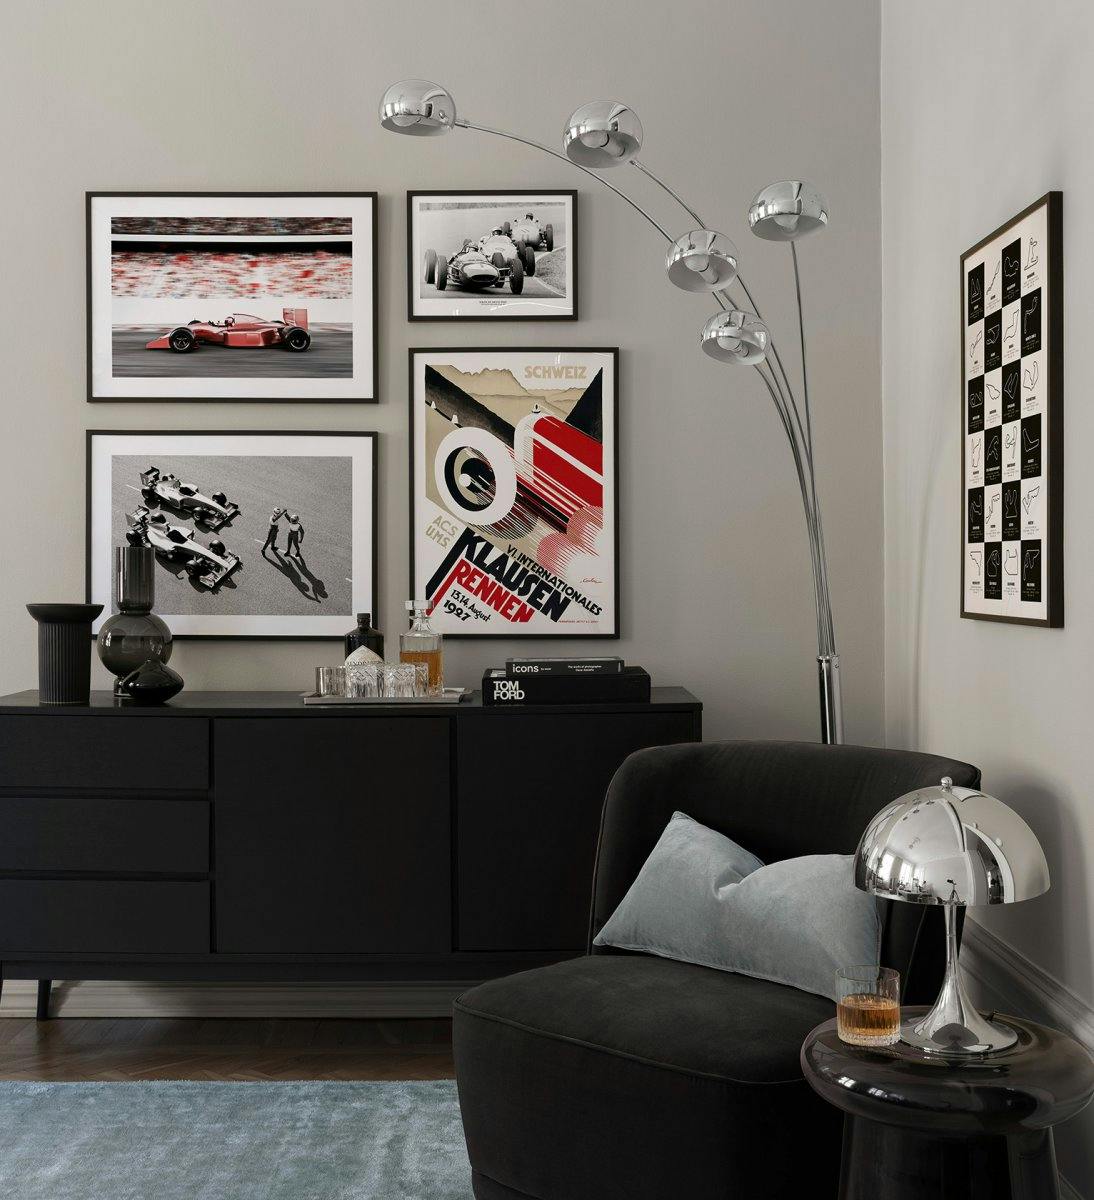 Fotowand racewagengalerij met foto's en illustraties van Formule 1-wagens met zwarte houten lijsten voor de woonkamer.